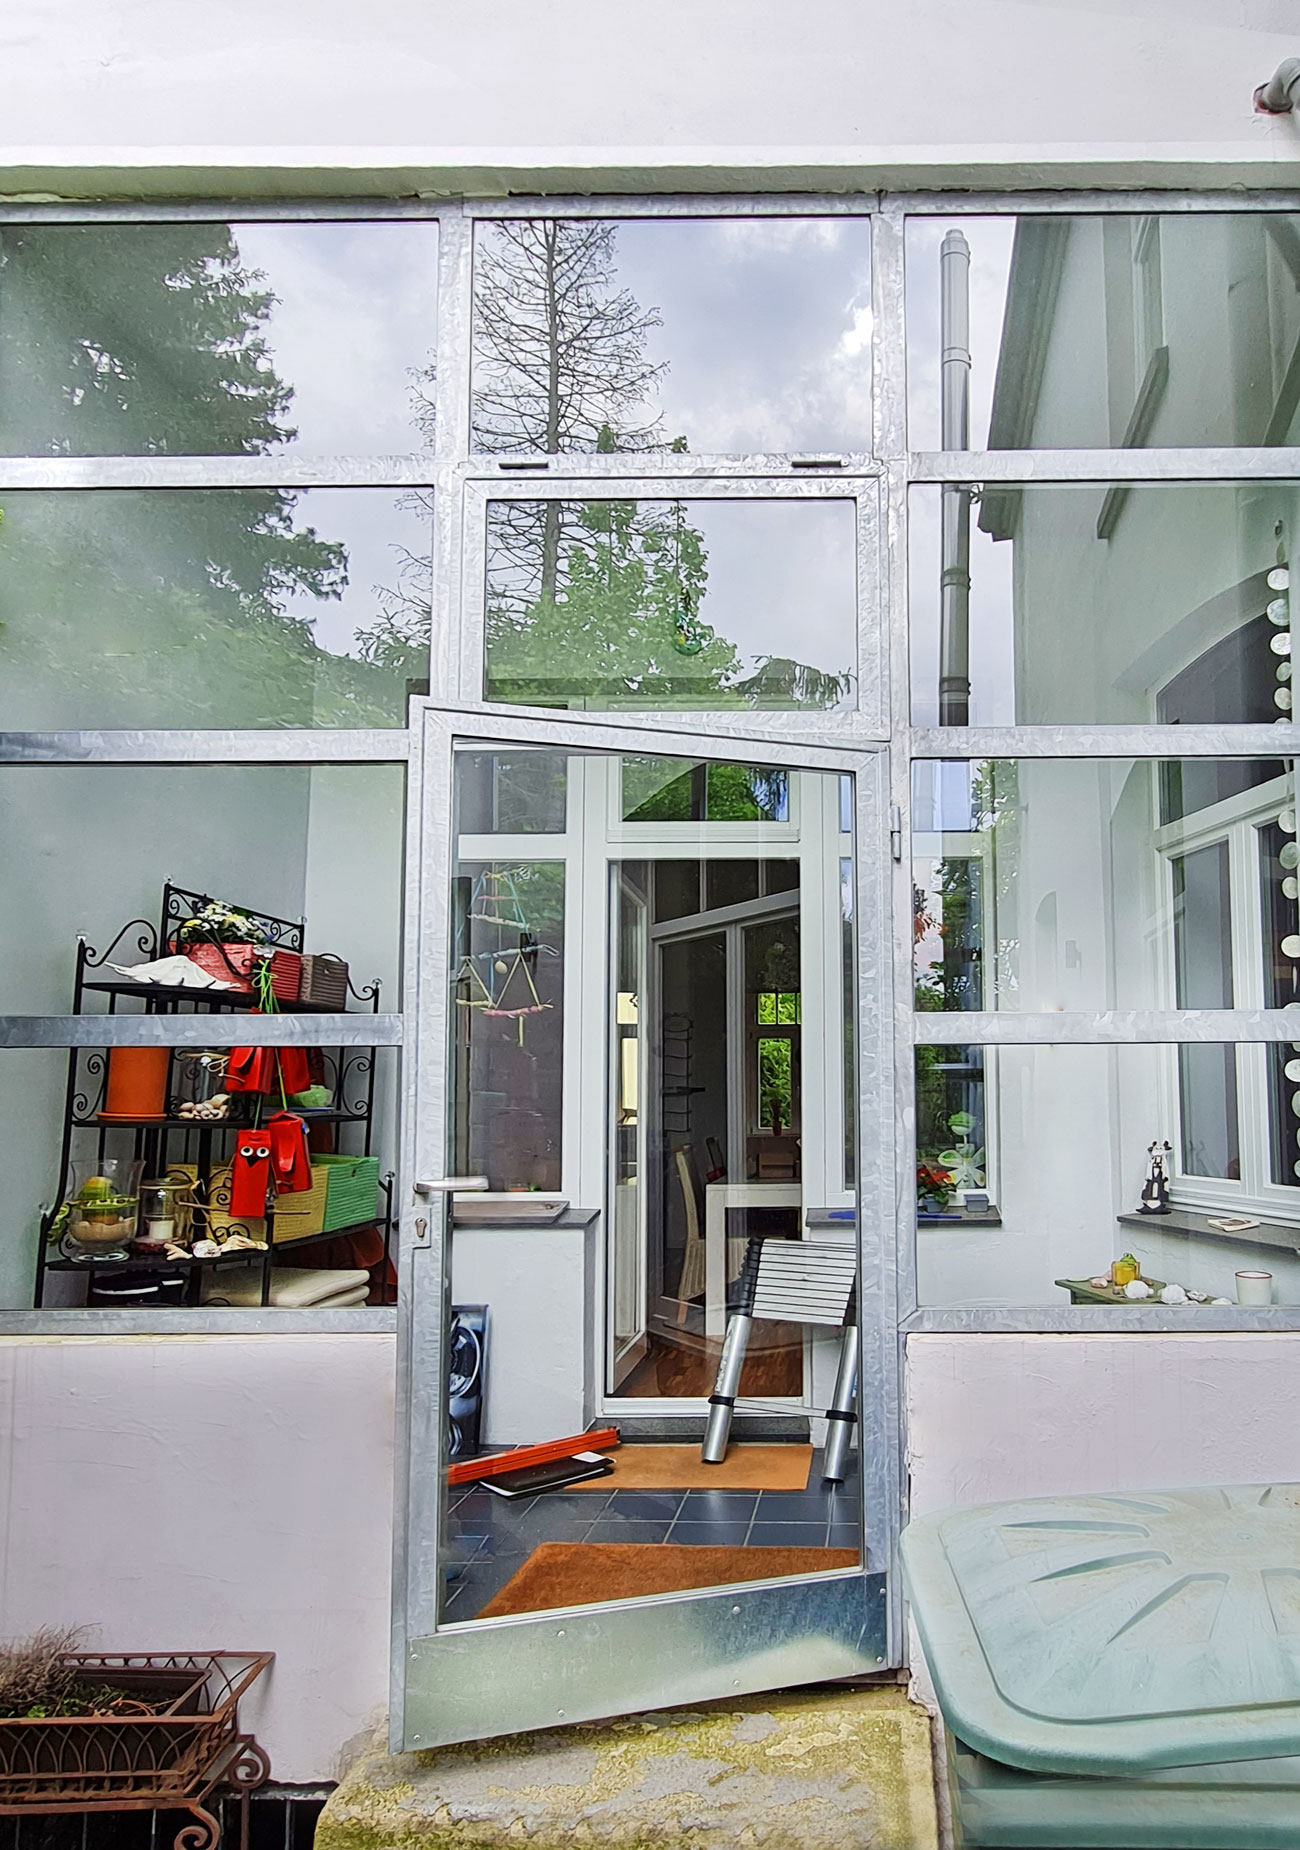 Mehrteilige Fenster-Tür-Anlage in den Balkon eingearbeitet und gebaut von der Edelstahlschlosserei Nappenfeld aus Mühlheim